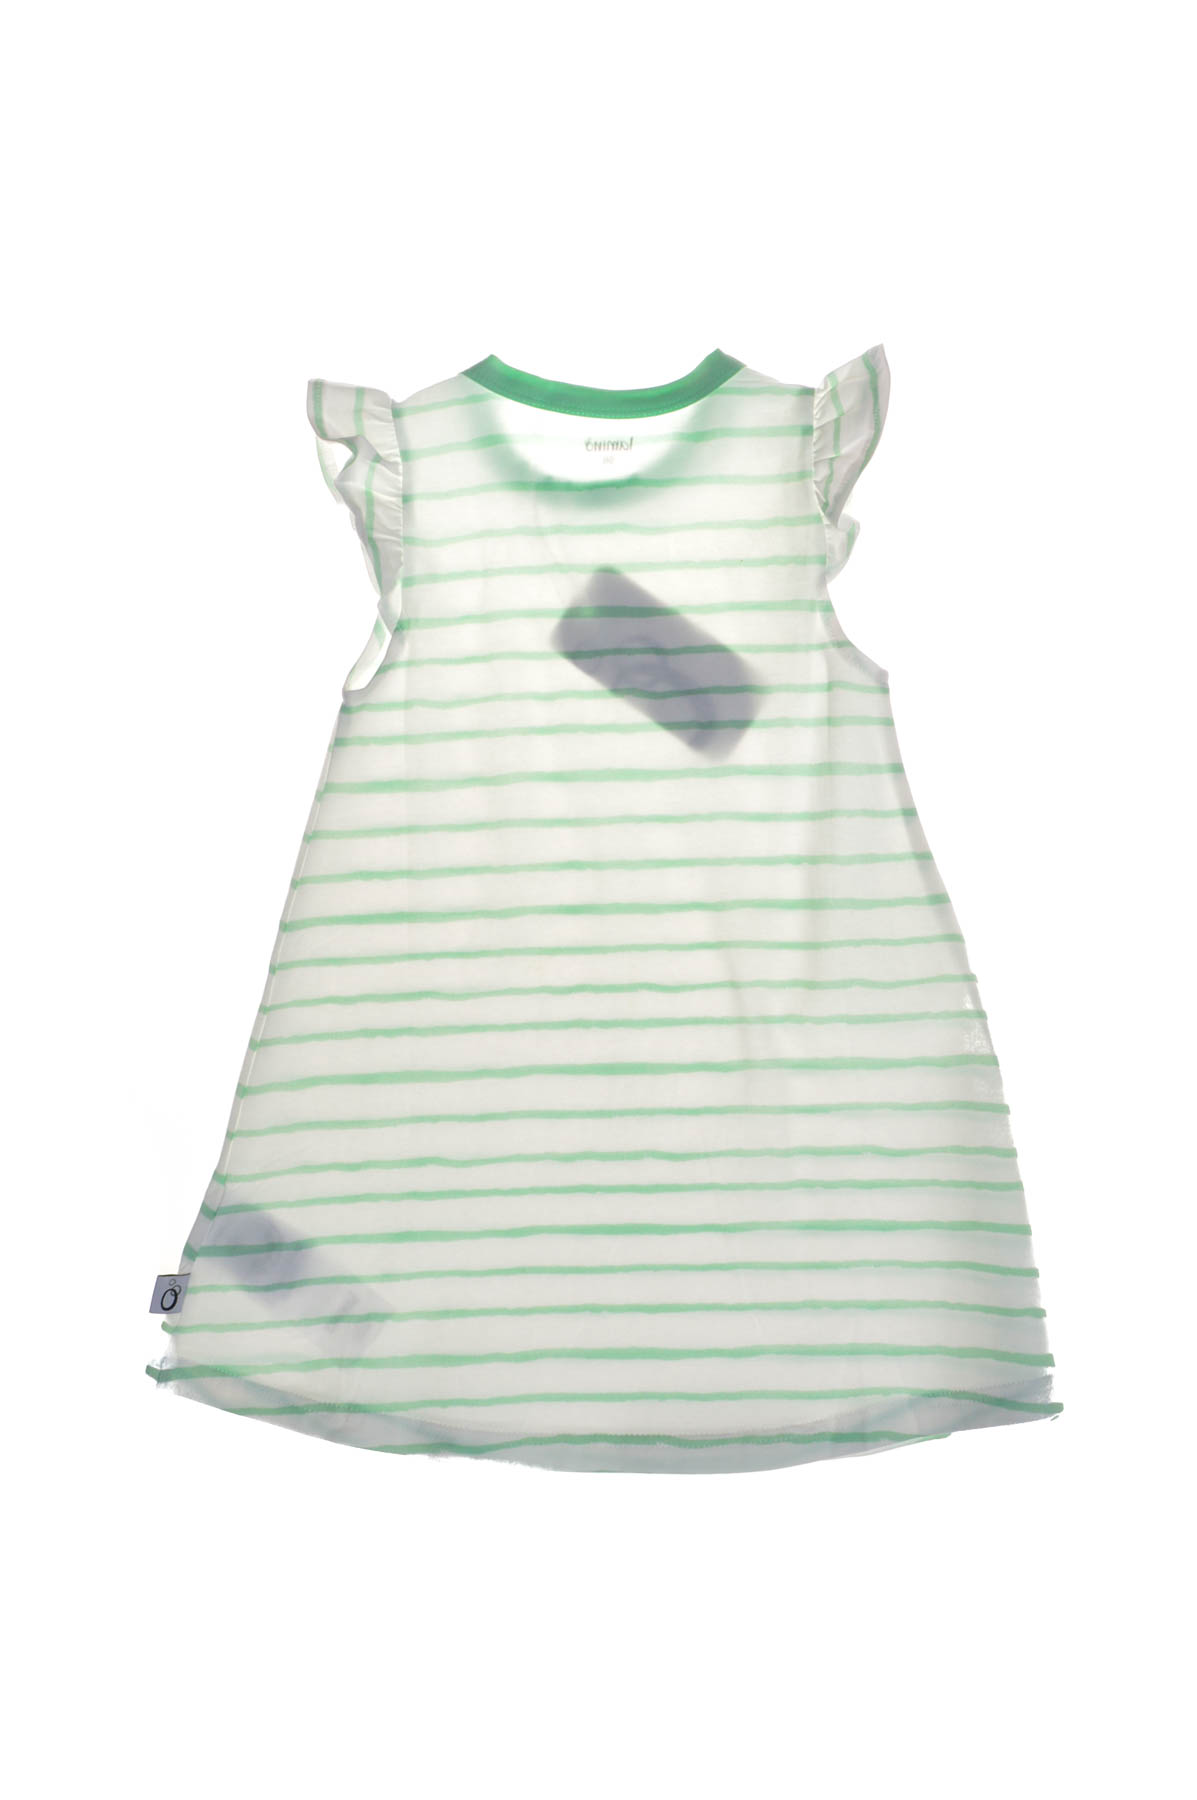 Child's dress - Lamino - 1